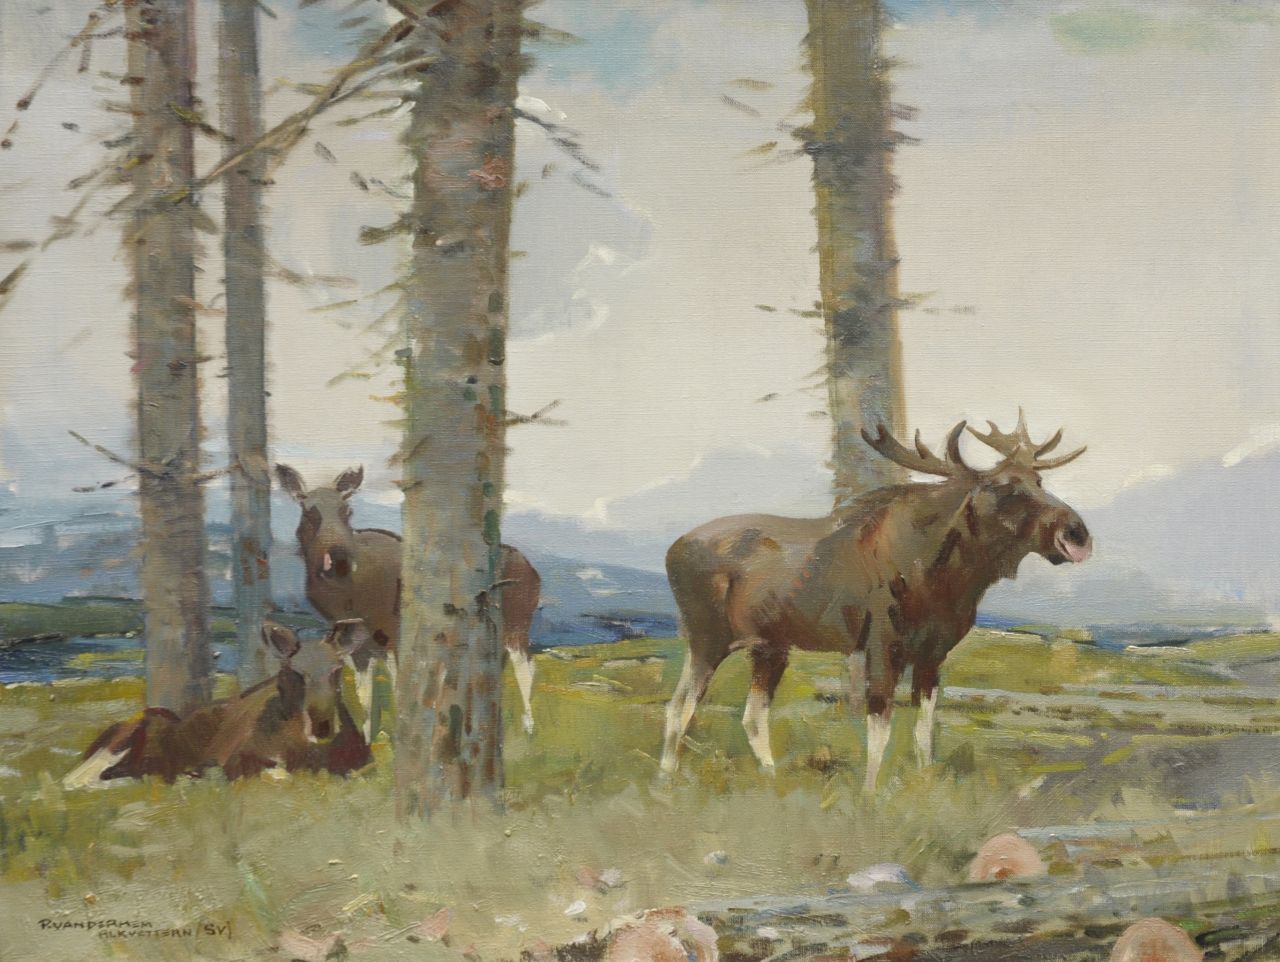 Hem P. van der | Pieter 'Piet' van der Hem, Elks near Alkvettern, Zweden, Öl auf Leinwand 60,5 x 80,5 cm, signed l.l.